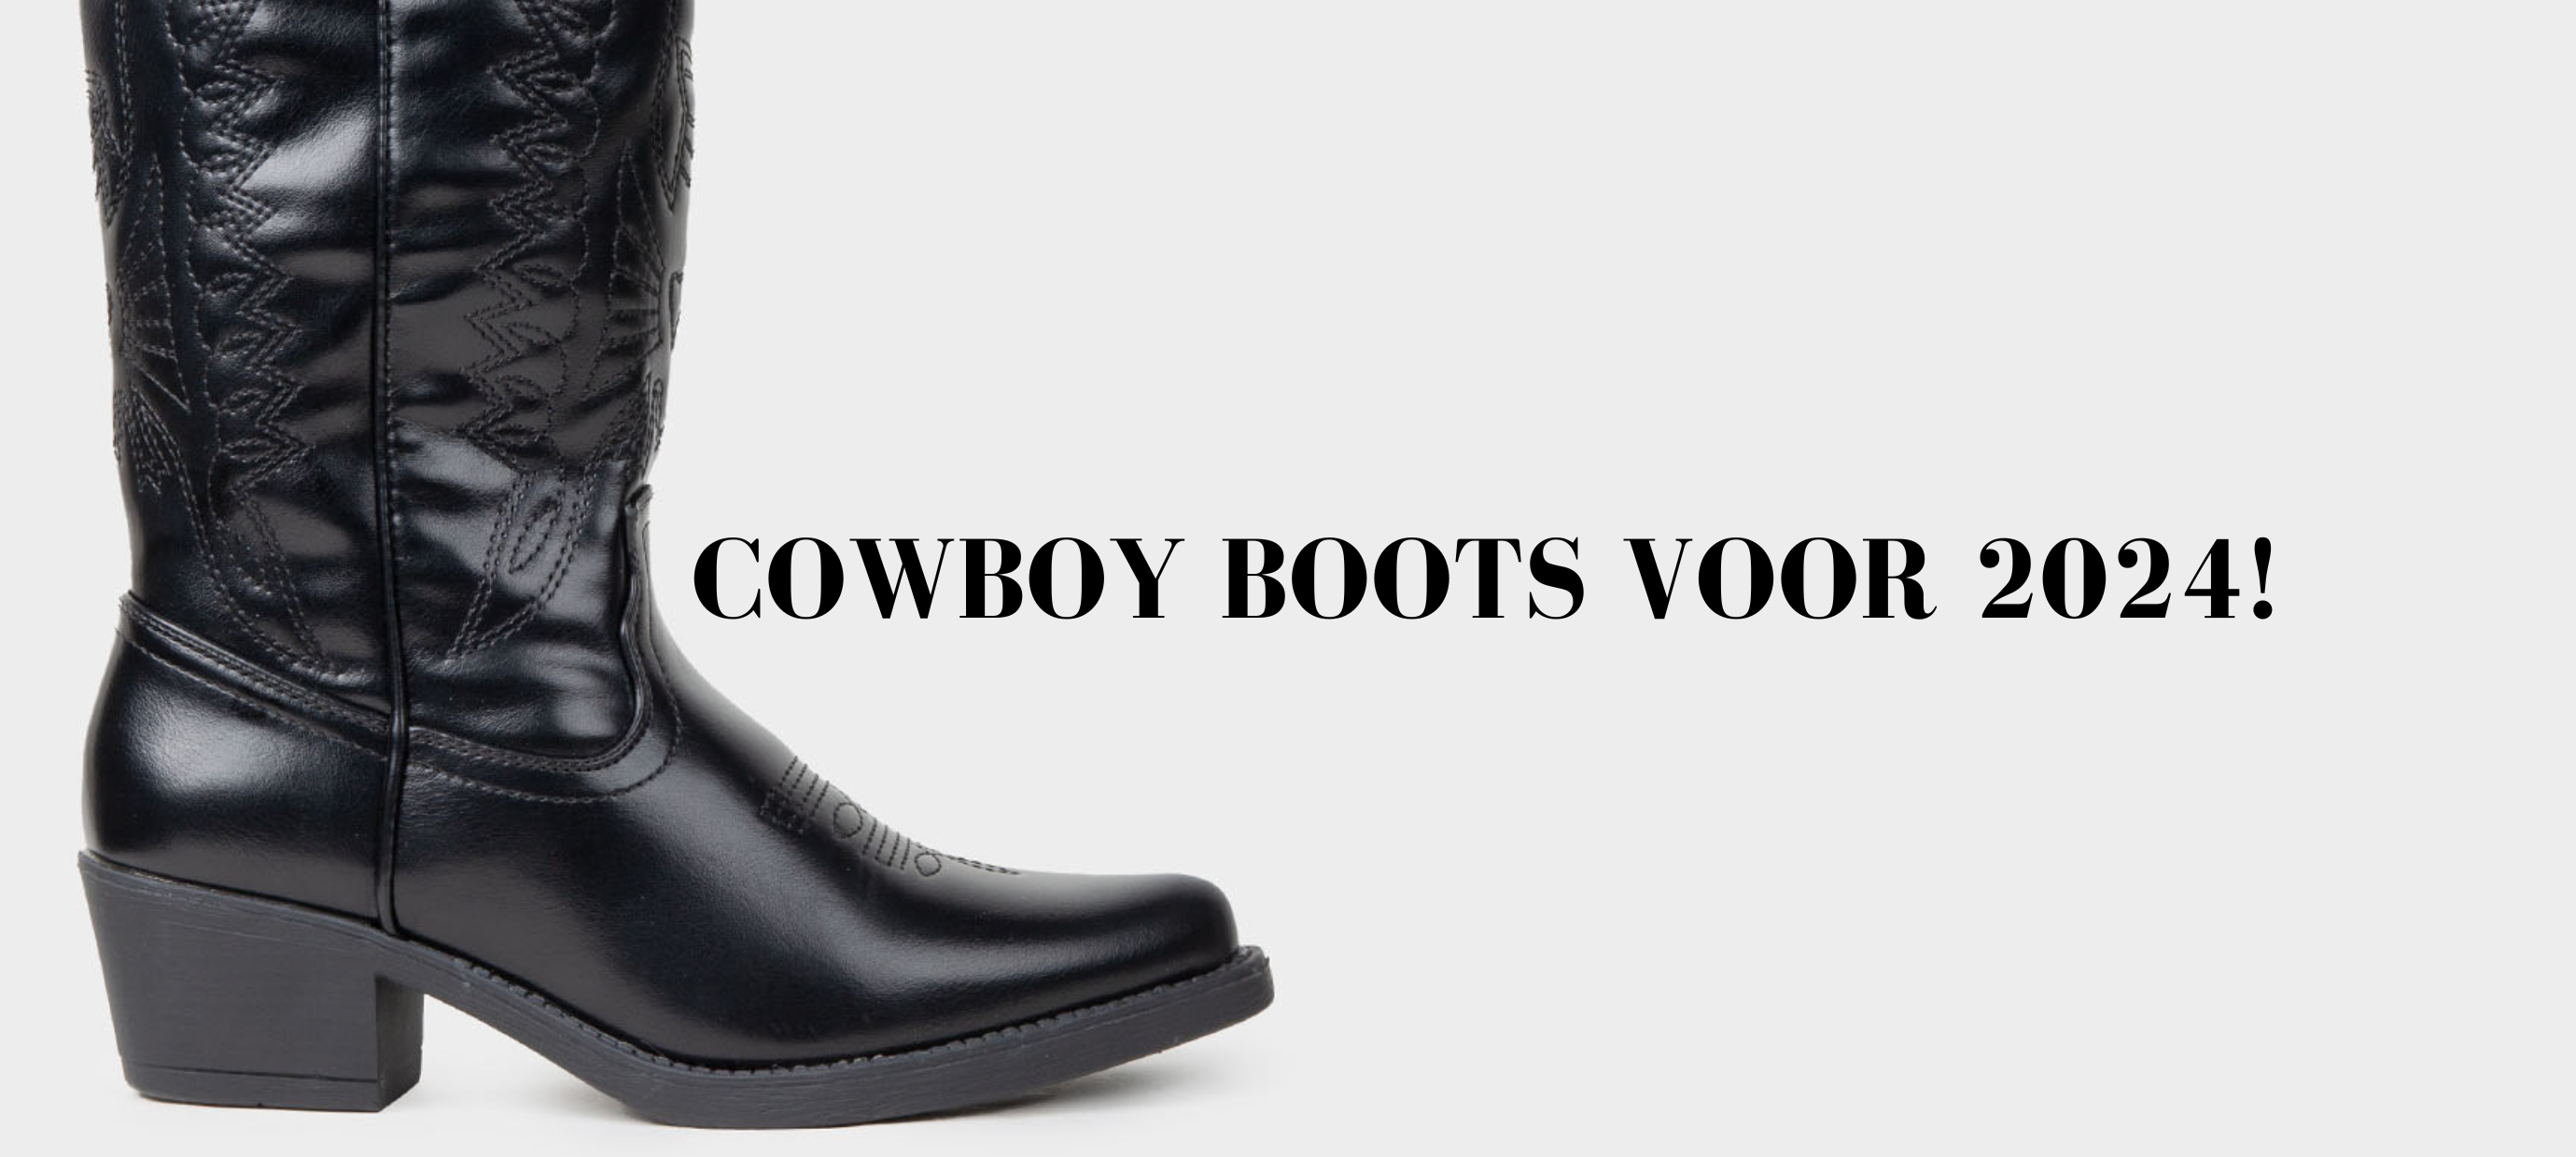 Cowboy Boots voor 2024!